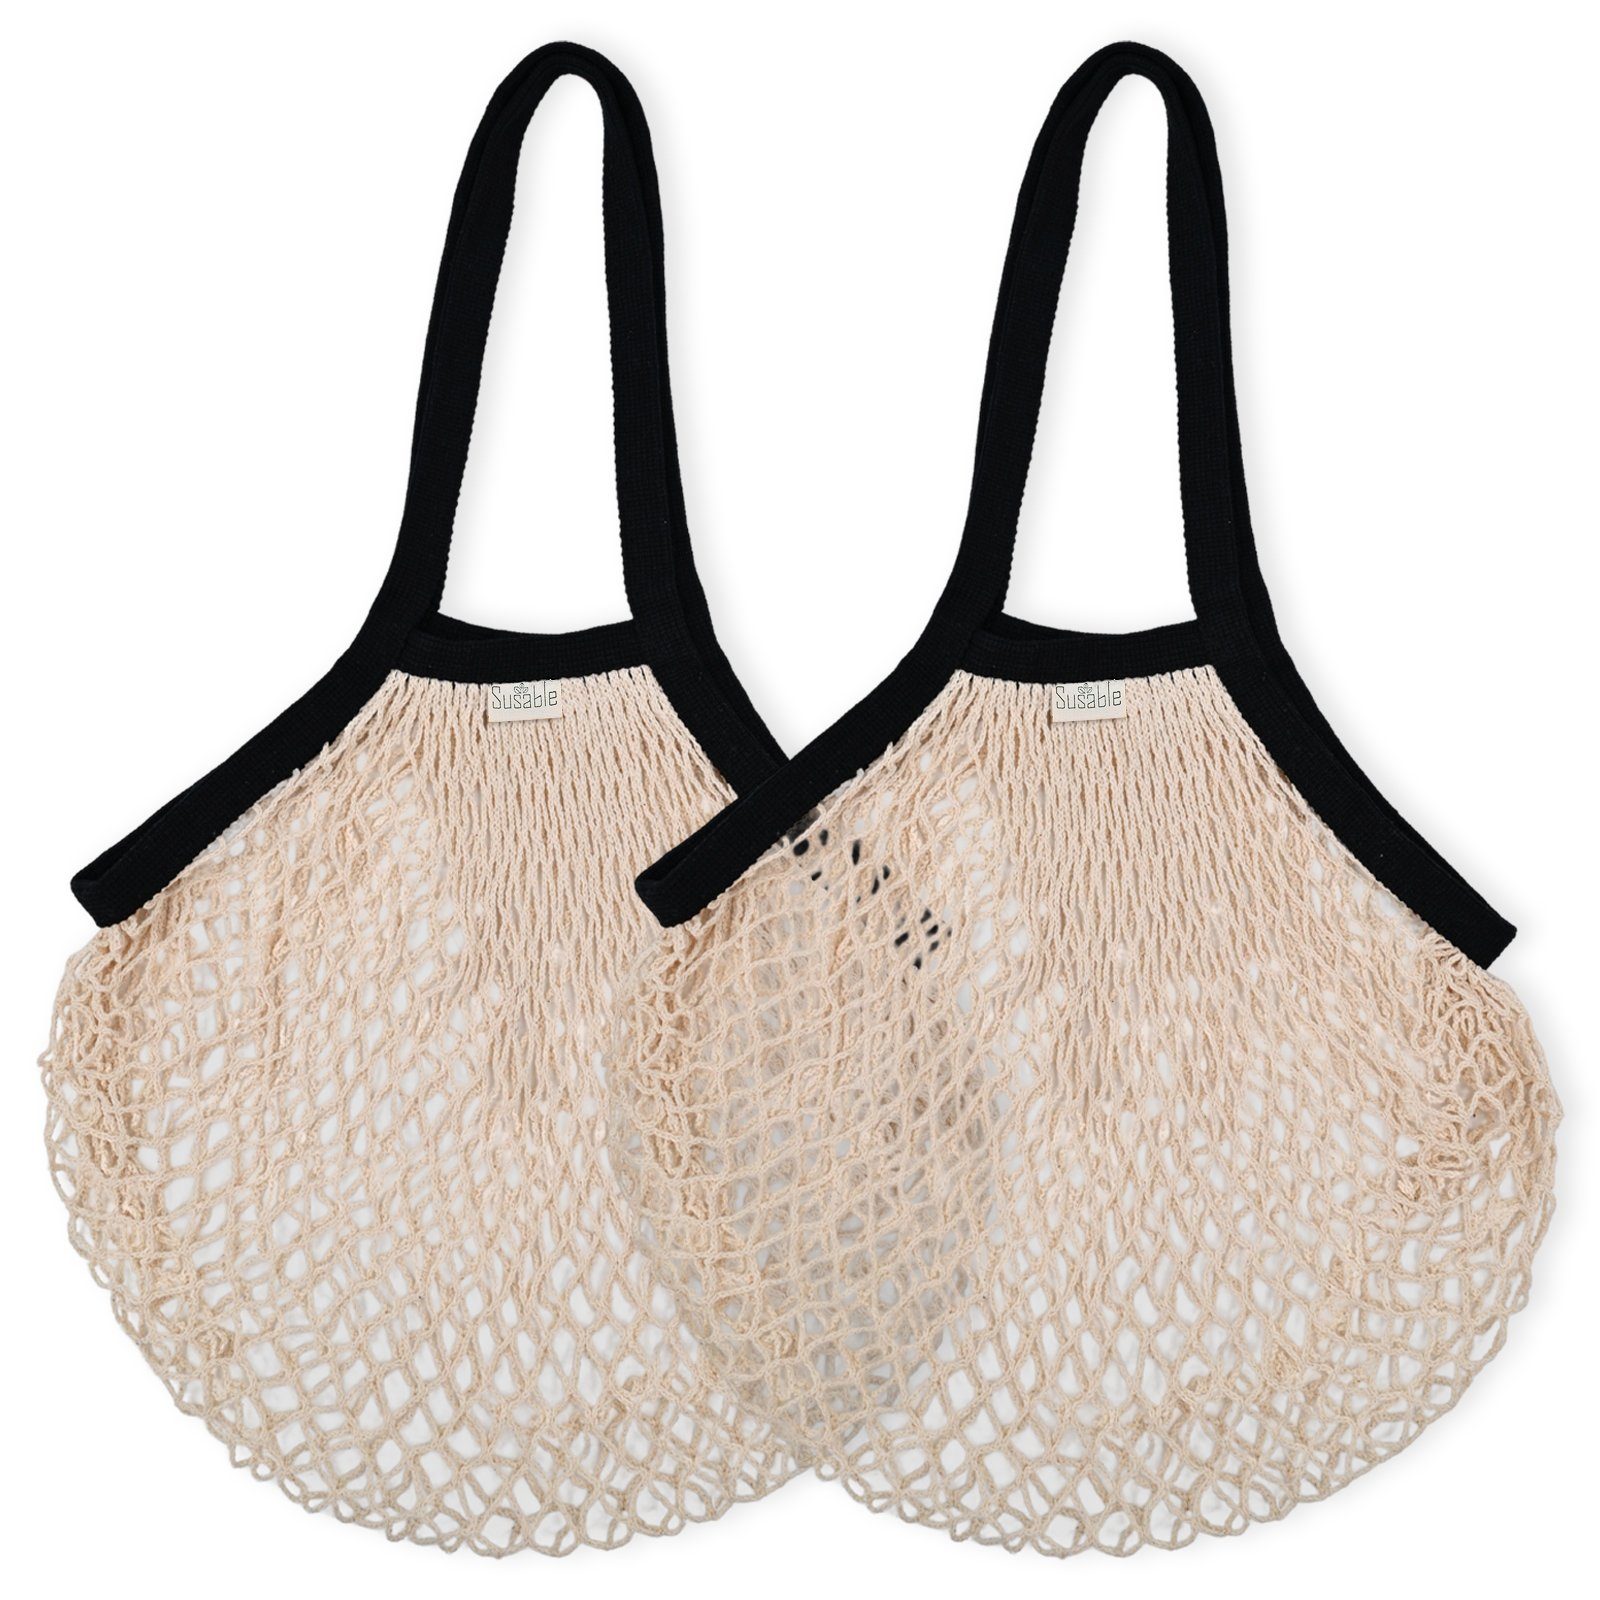 Susable Einkaufstasche Bio-Baumwolle aus Schultertasche 2er-set Netztasche – Vielseitige